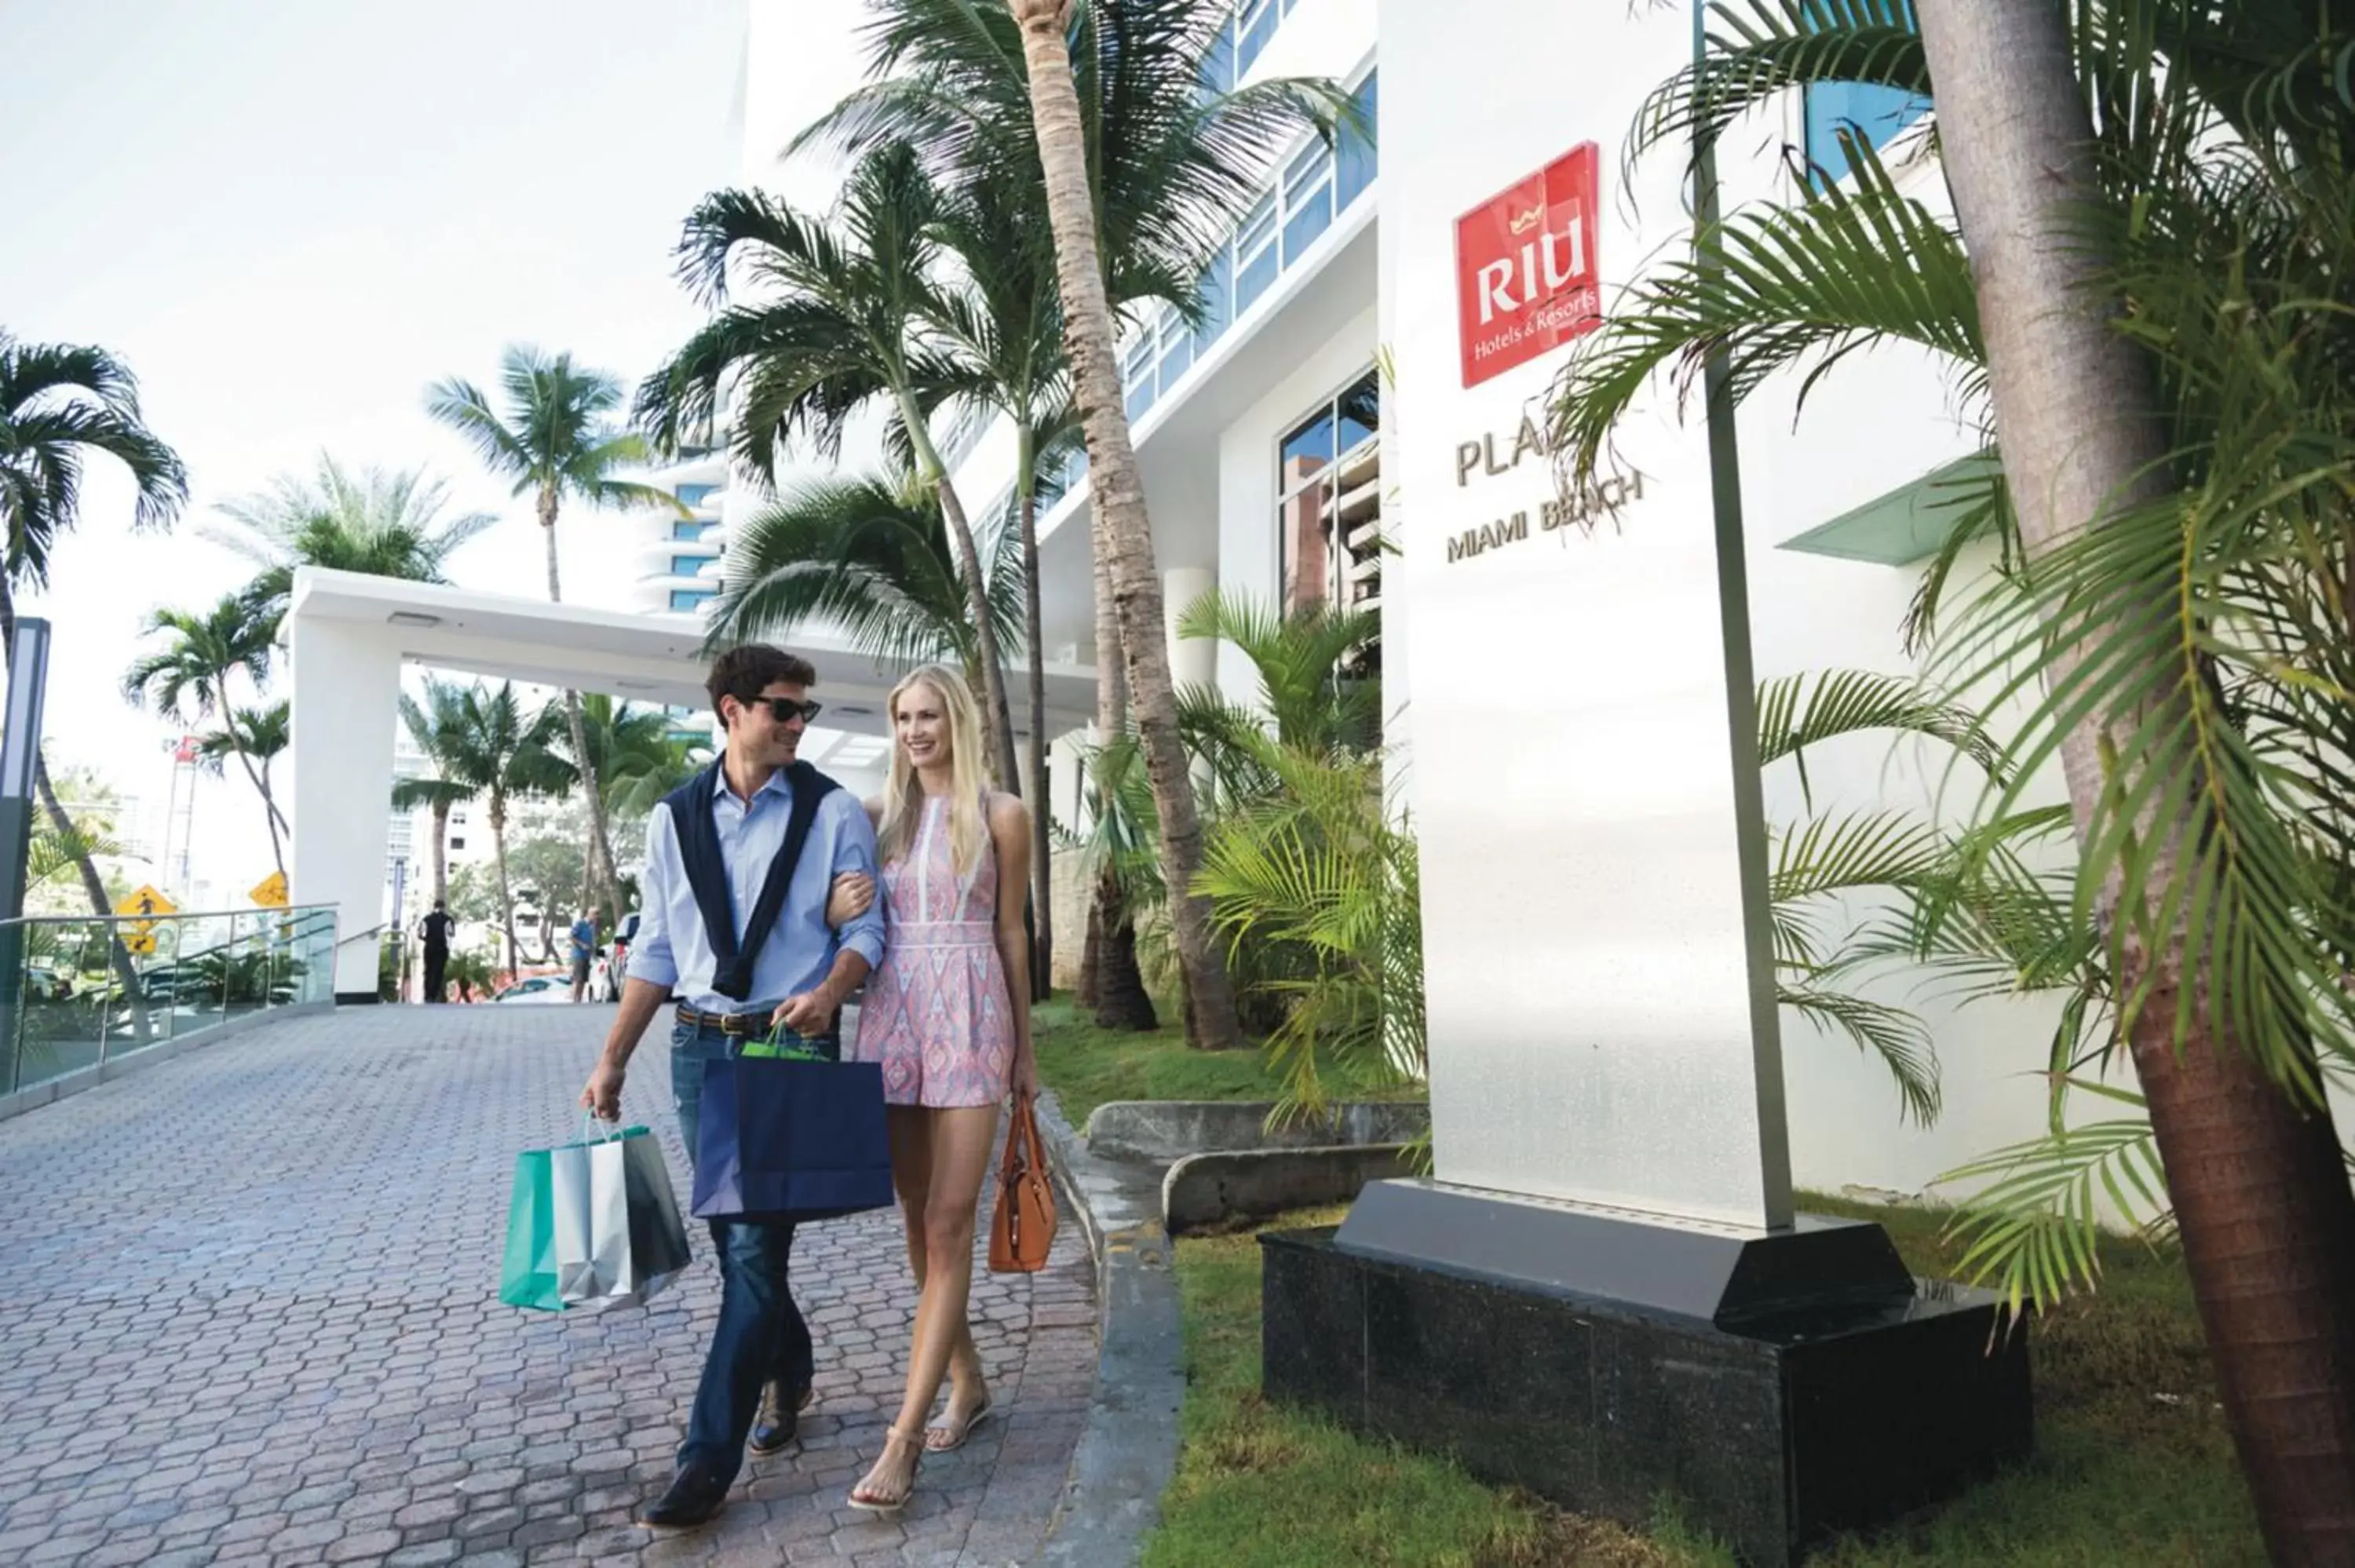 Facade/entrance in Riu Plaza Miami Beach